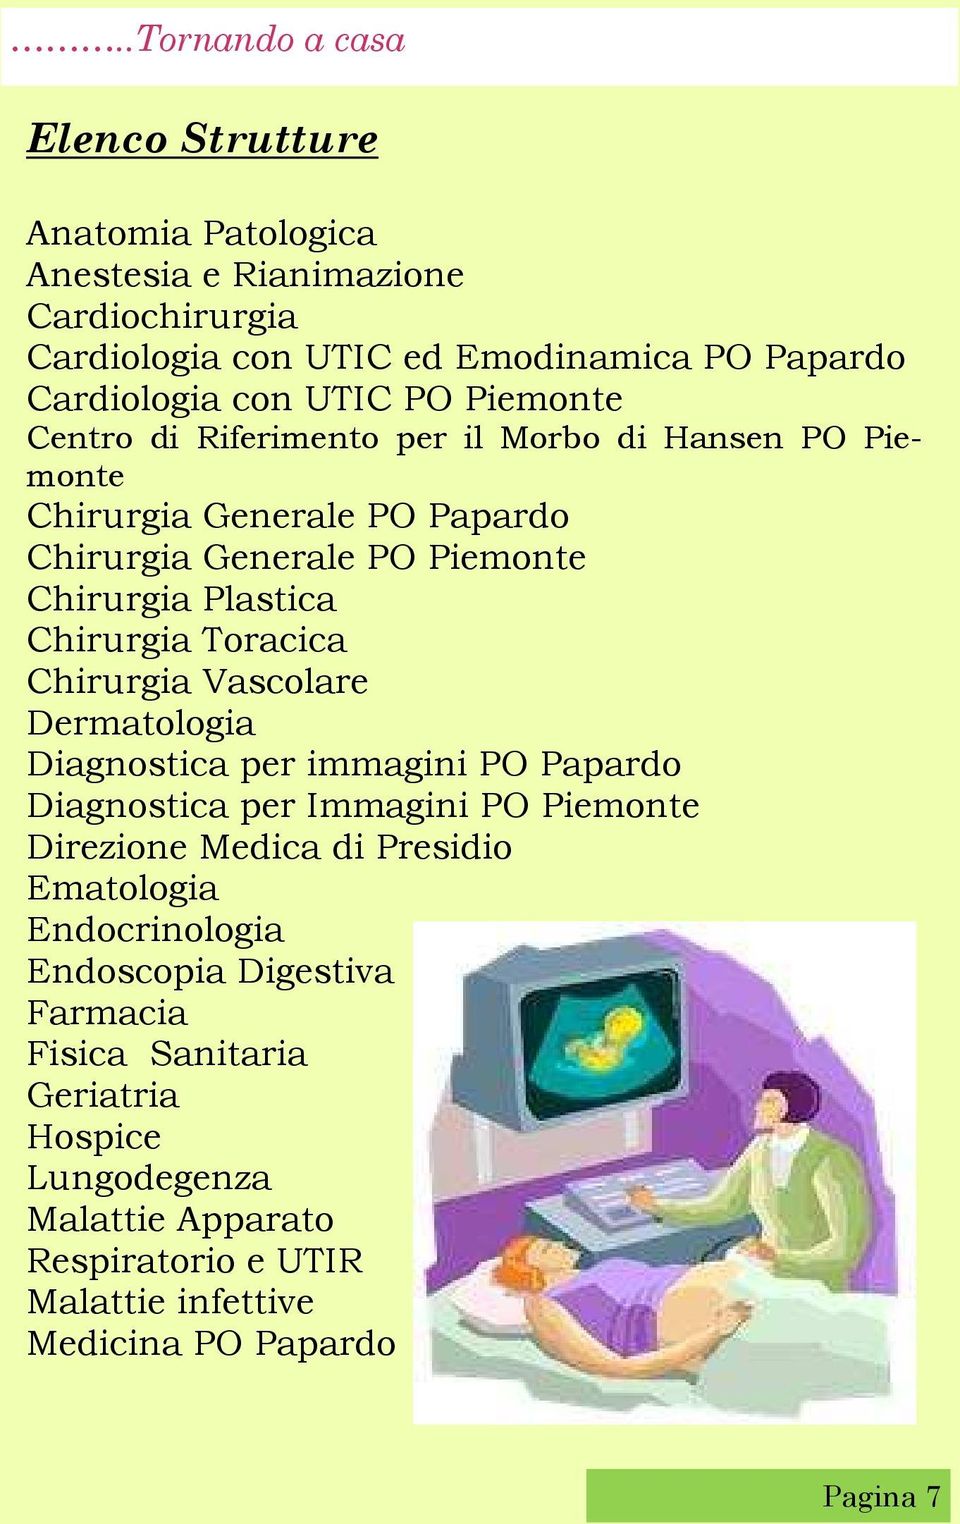 Chirurgia Vascolare Dermatologia Diagnostica per immagini PO Papardo Diagnostica per Immagini PO Piemonte Direzione Medica di Presidio Ematologia